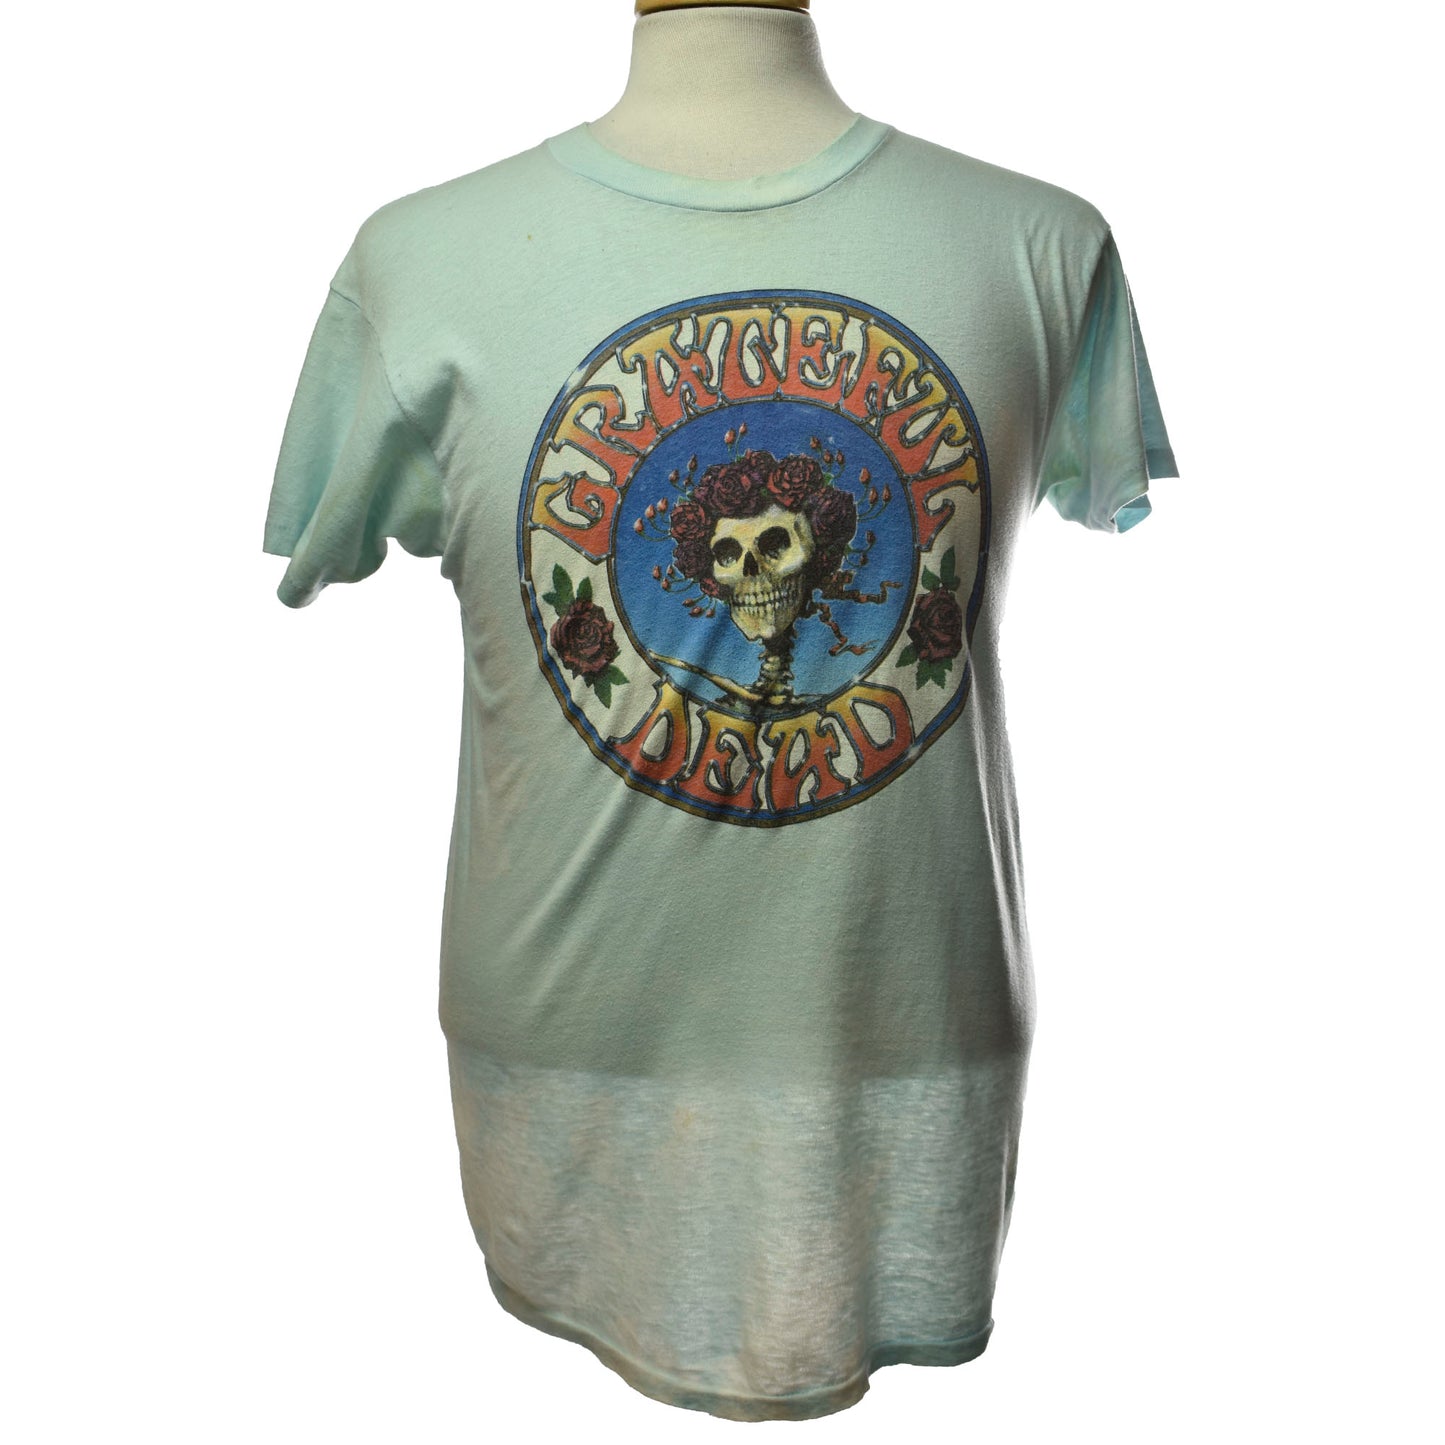 Vintage 1988 Grateful Dead Tour Music Promo Single Stitch Tie Dye Graphic T-shirt